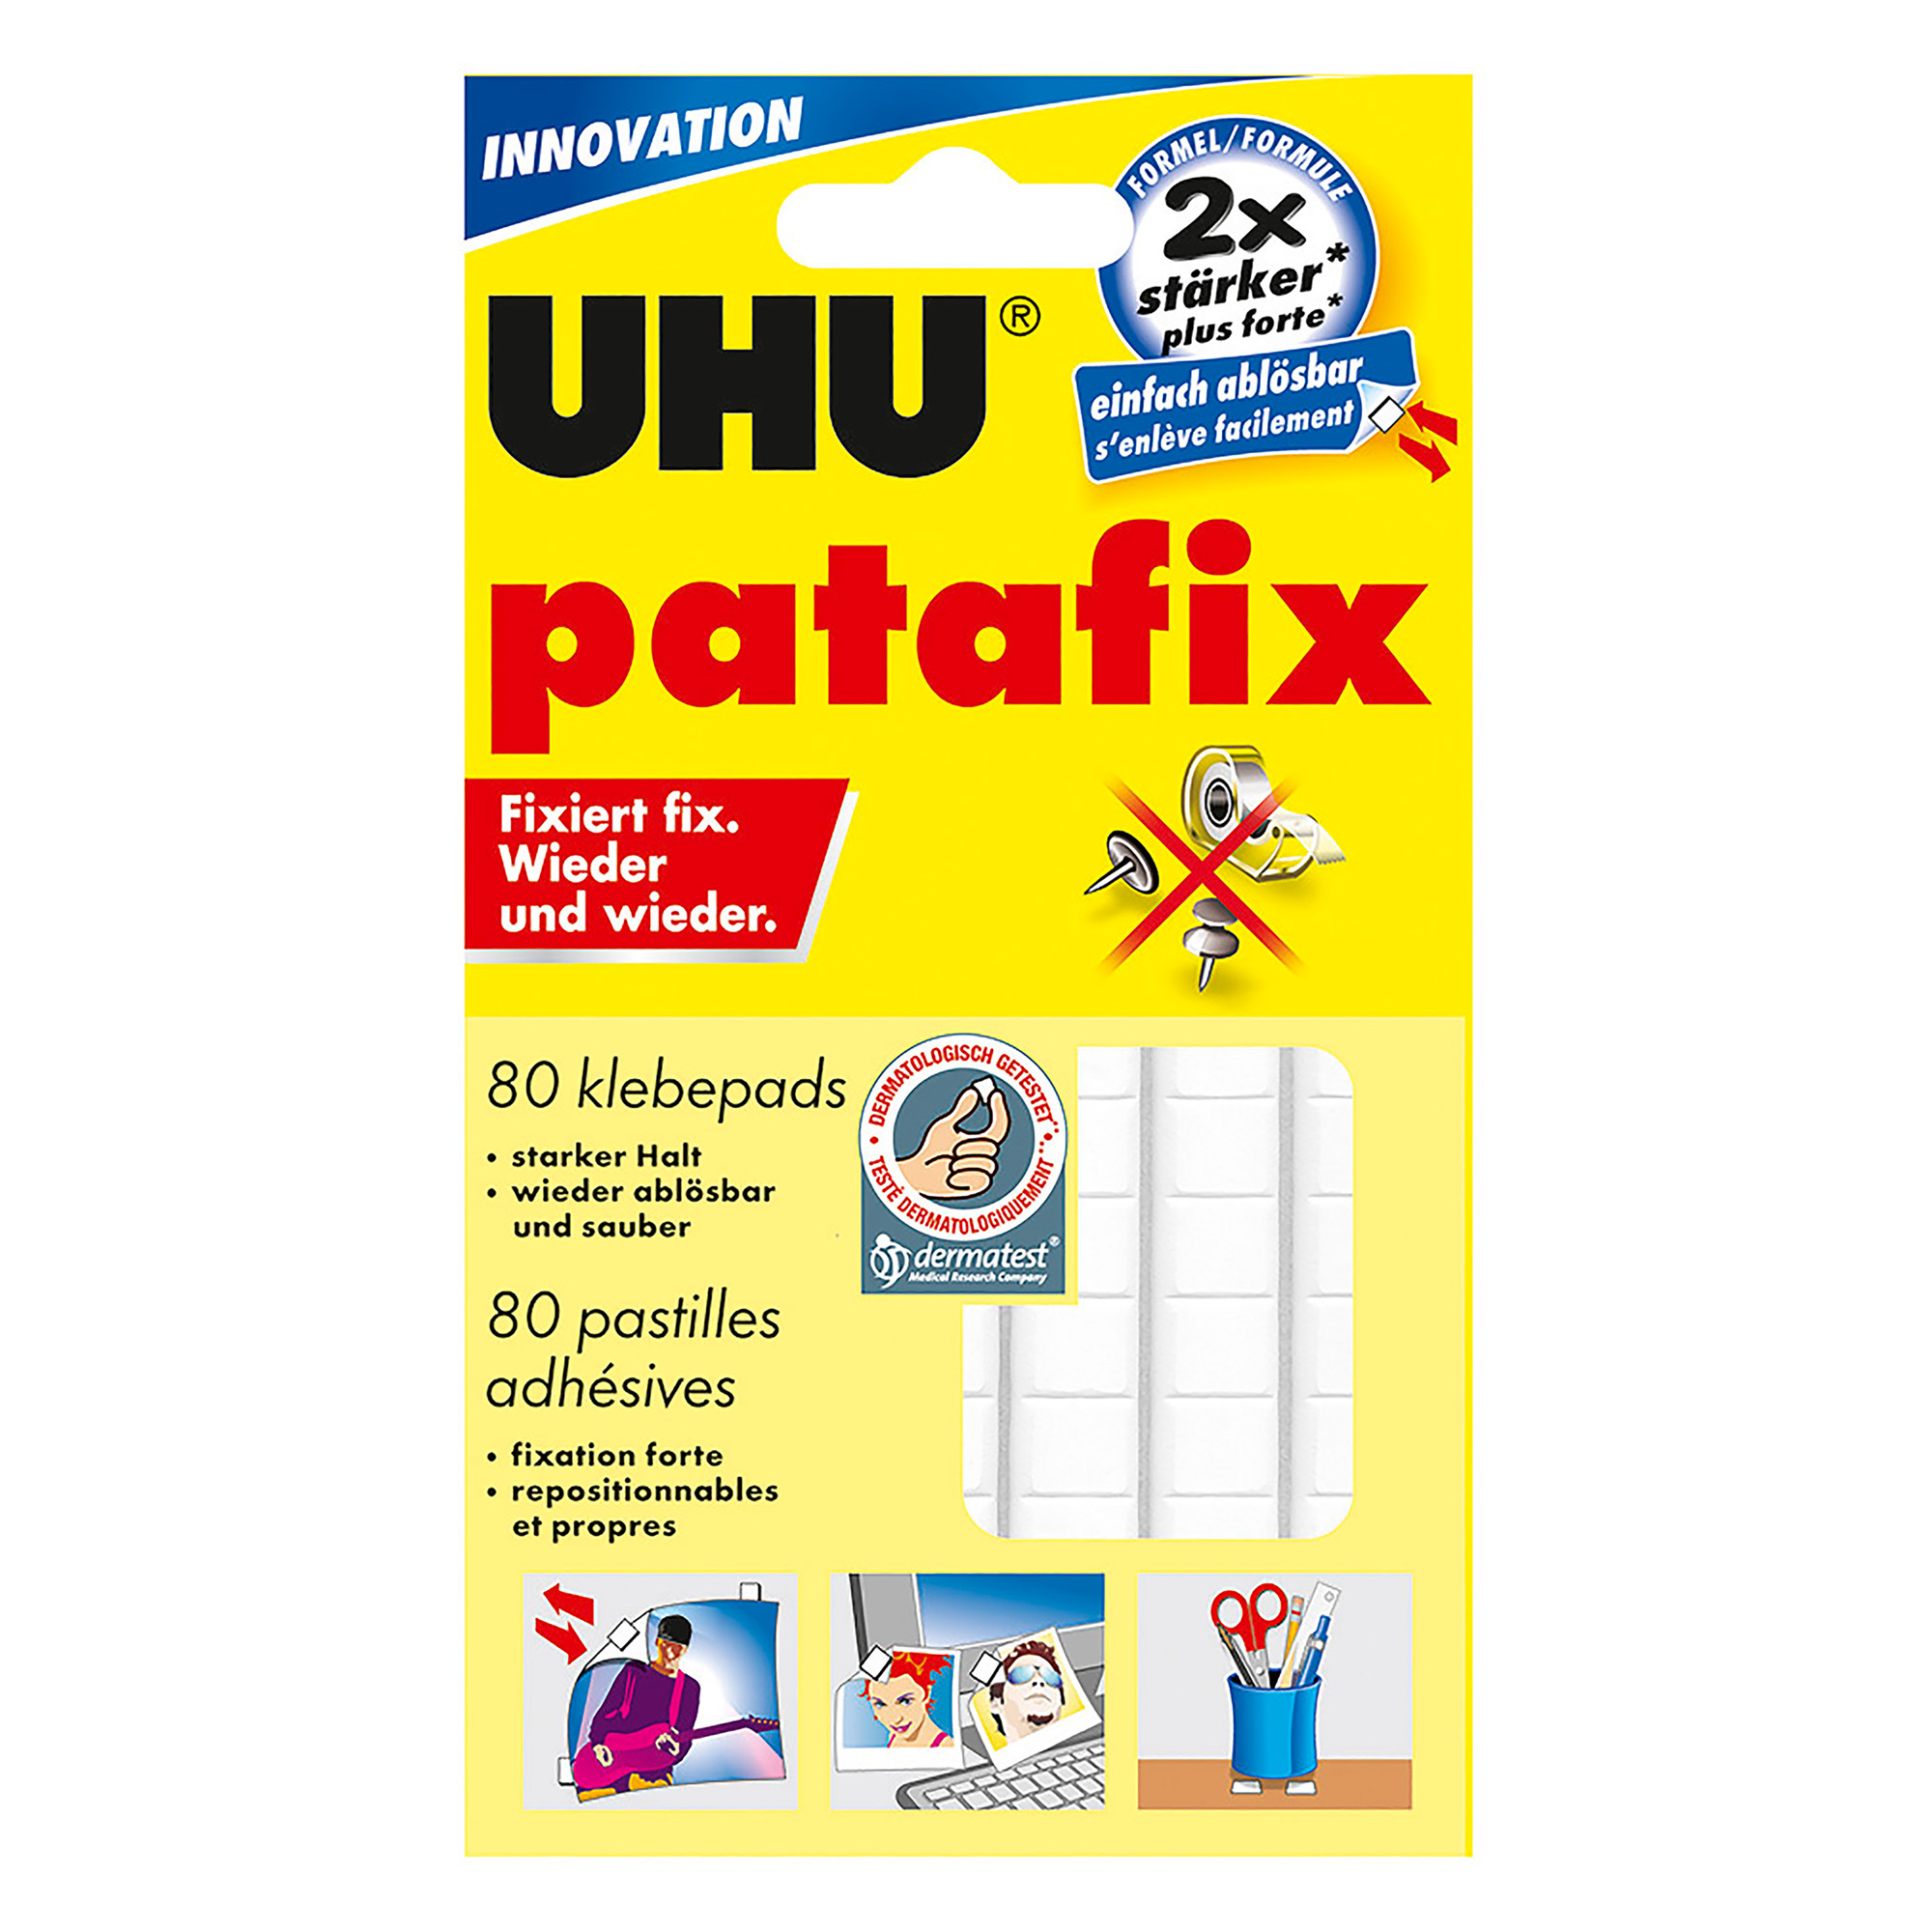 Patafix - UHU incolla tutto, su tutto